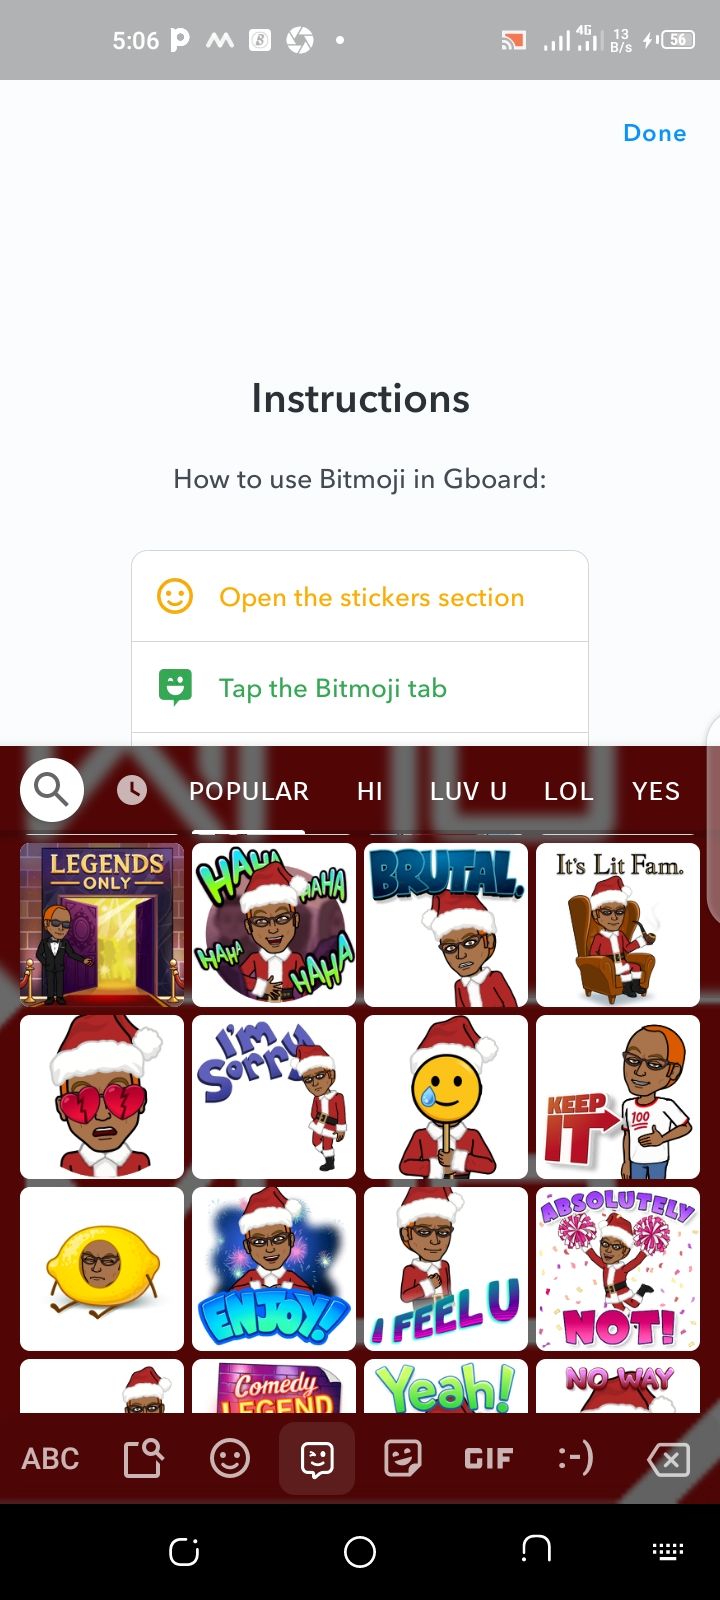 Bitmoji feature on Gboard